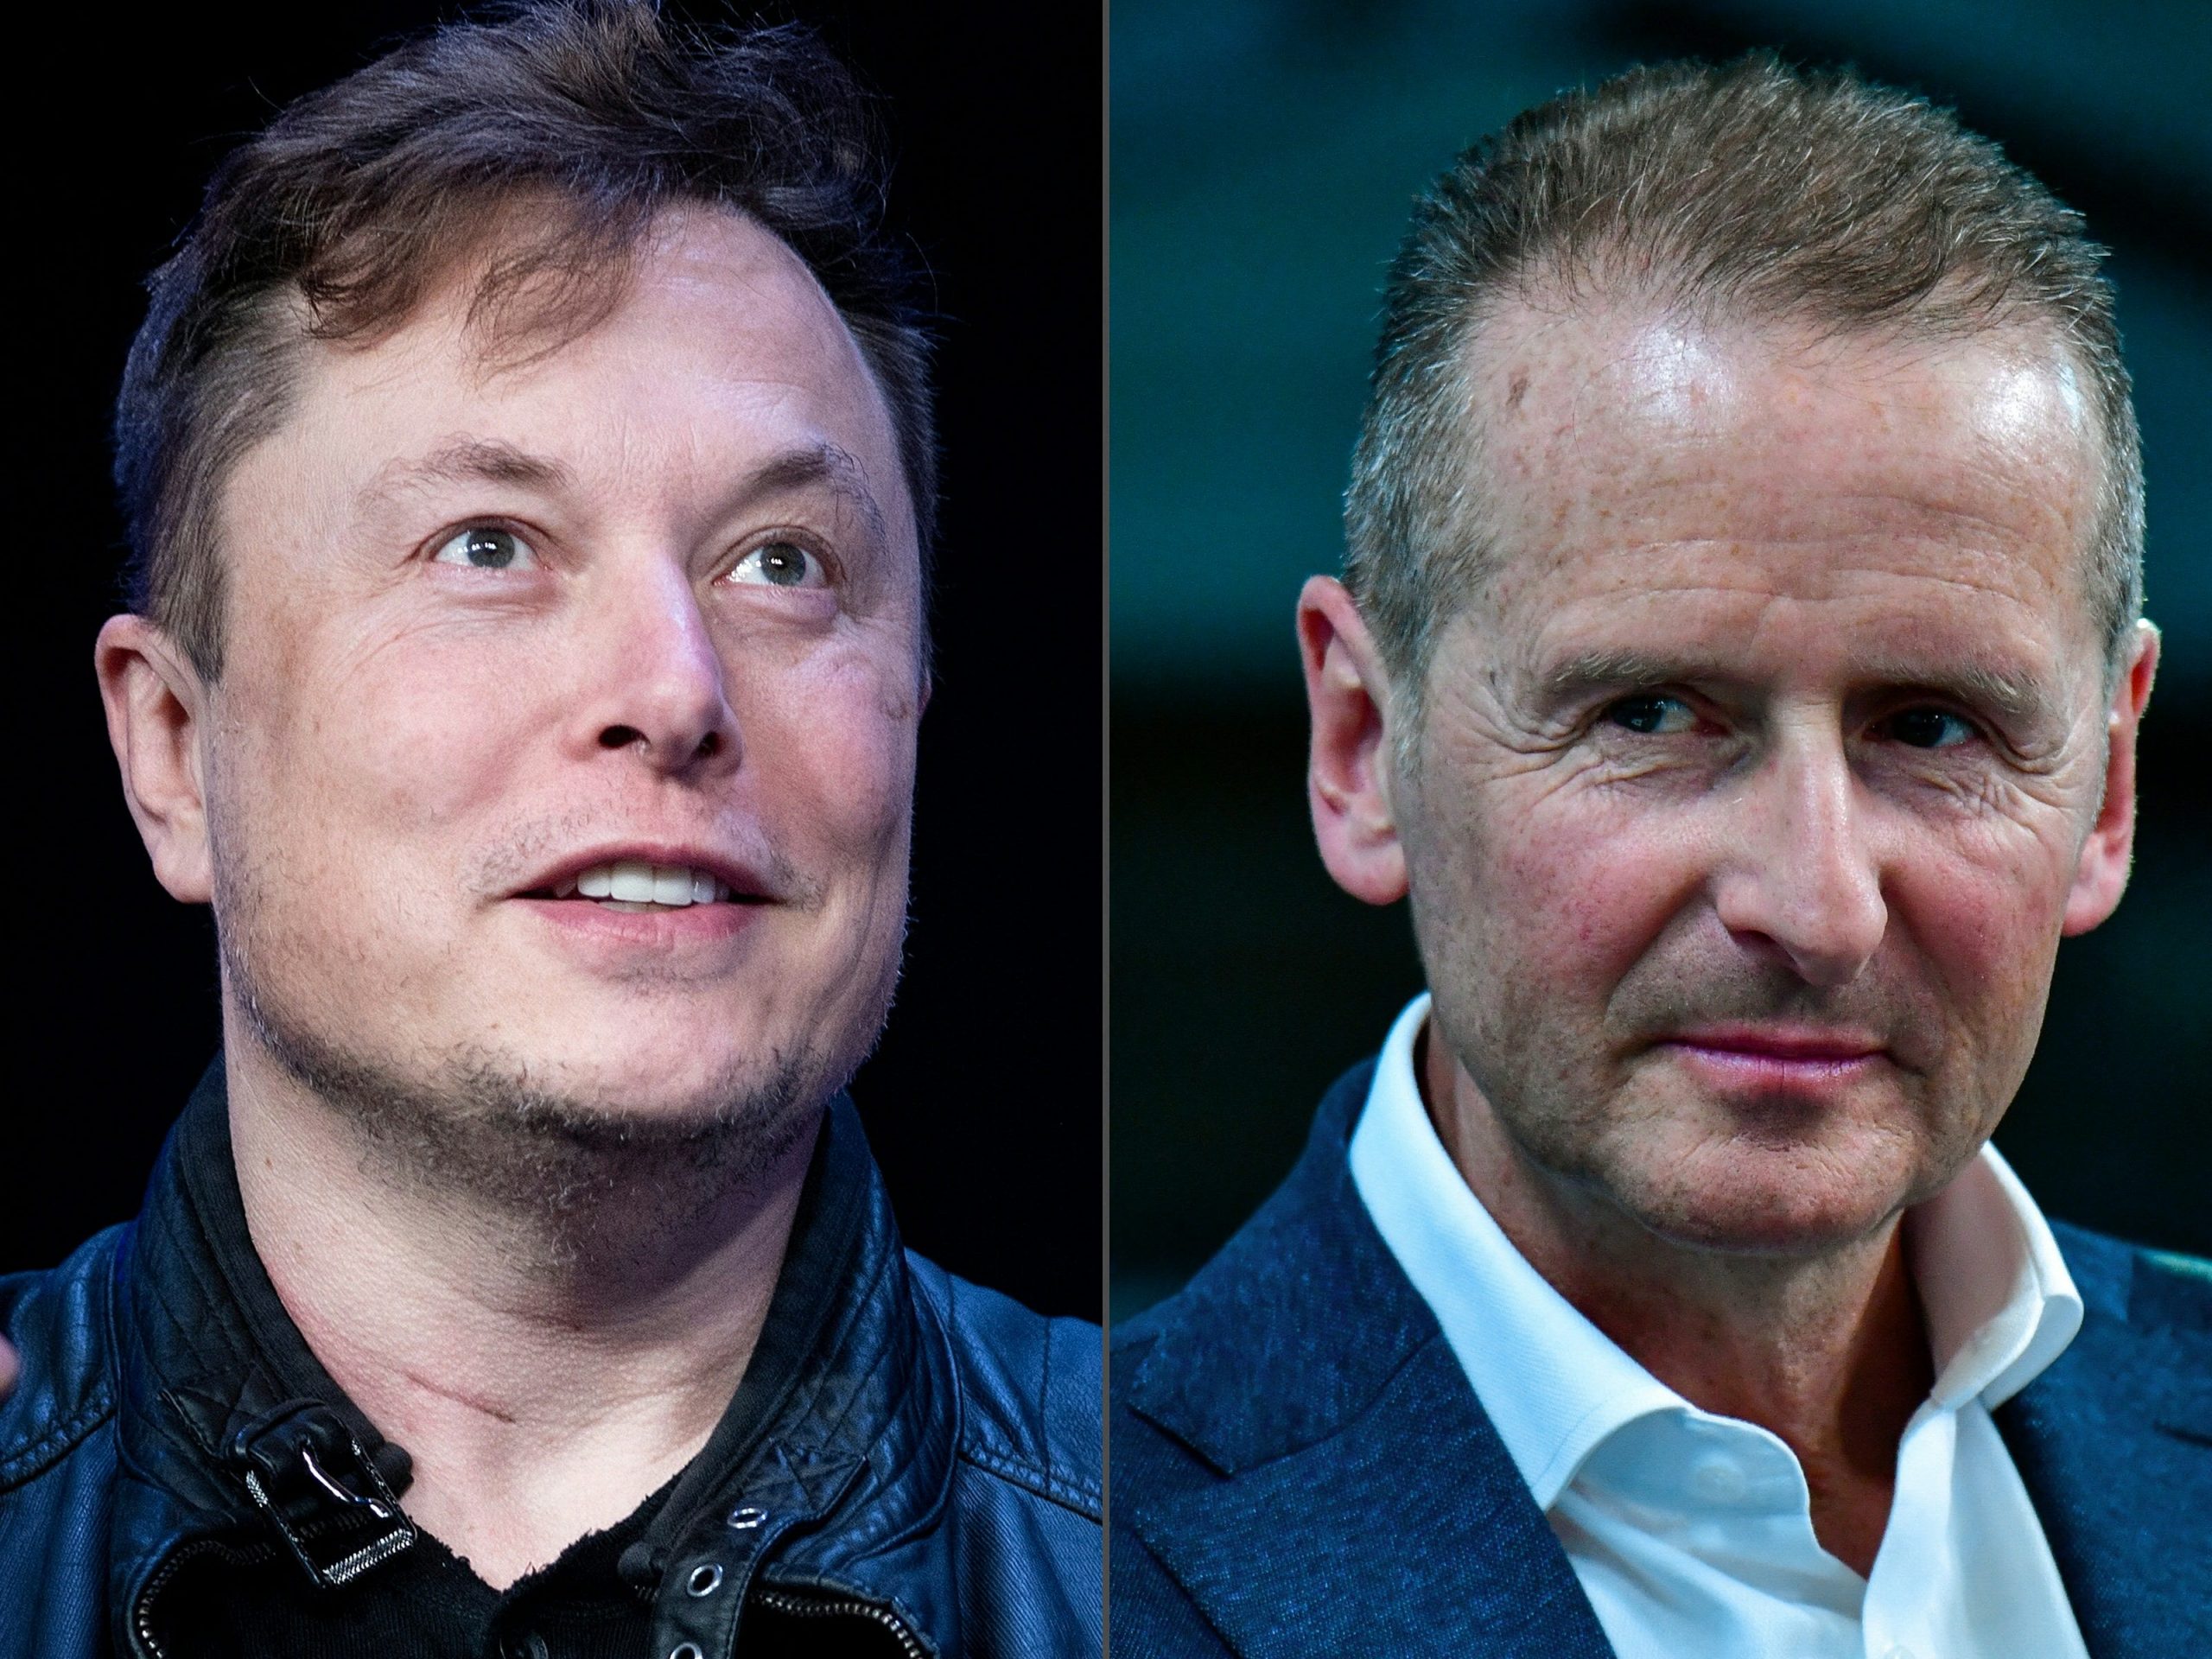 Photos of Tesla CEO Elon Musk and Volkswagen CEO Herbert Diess